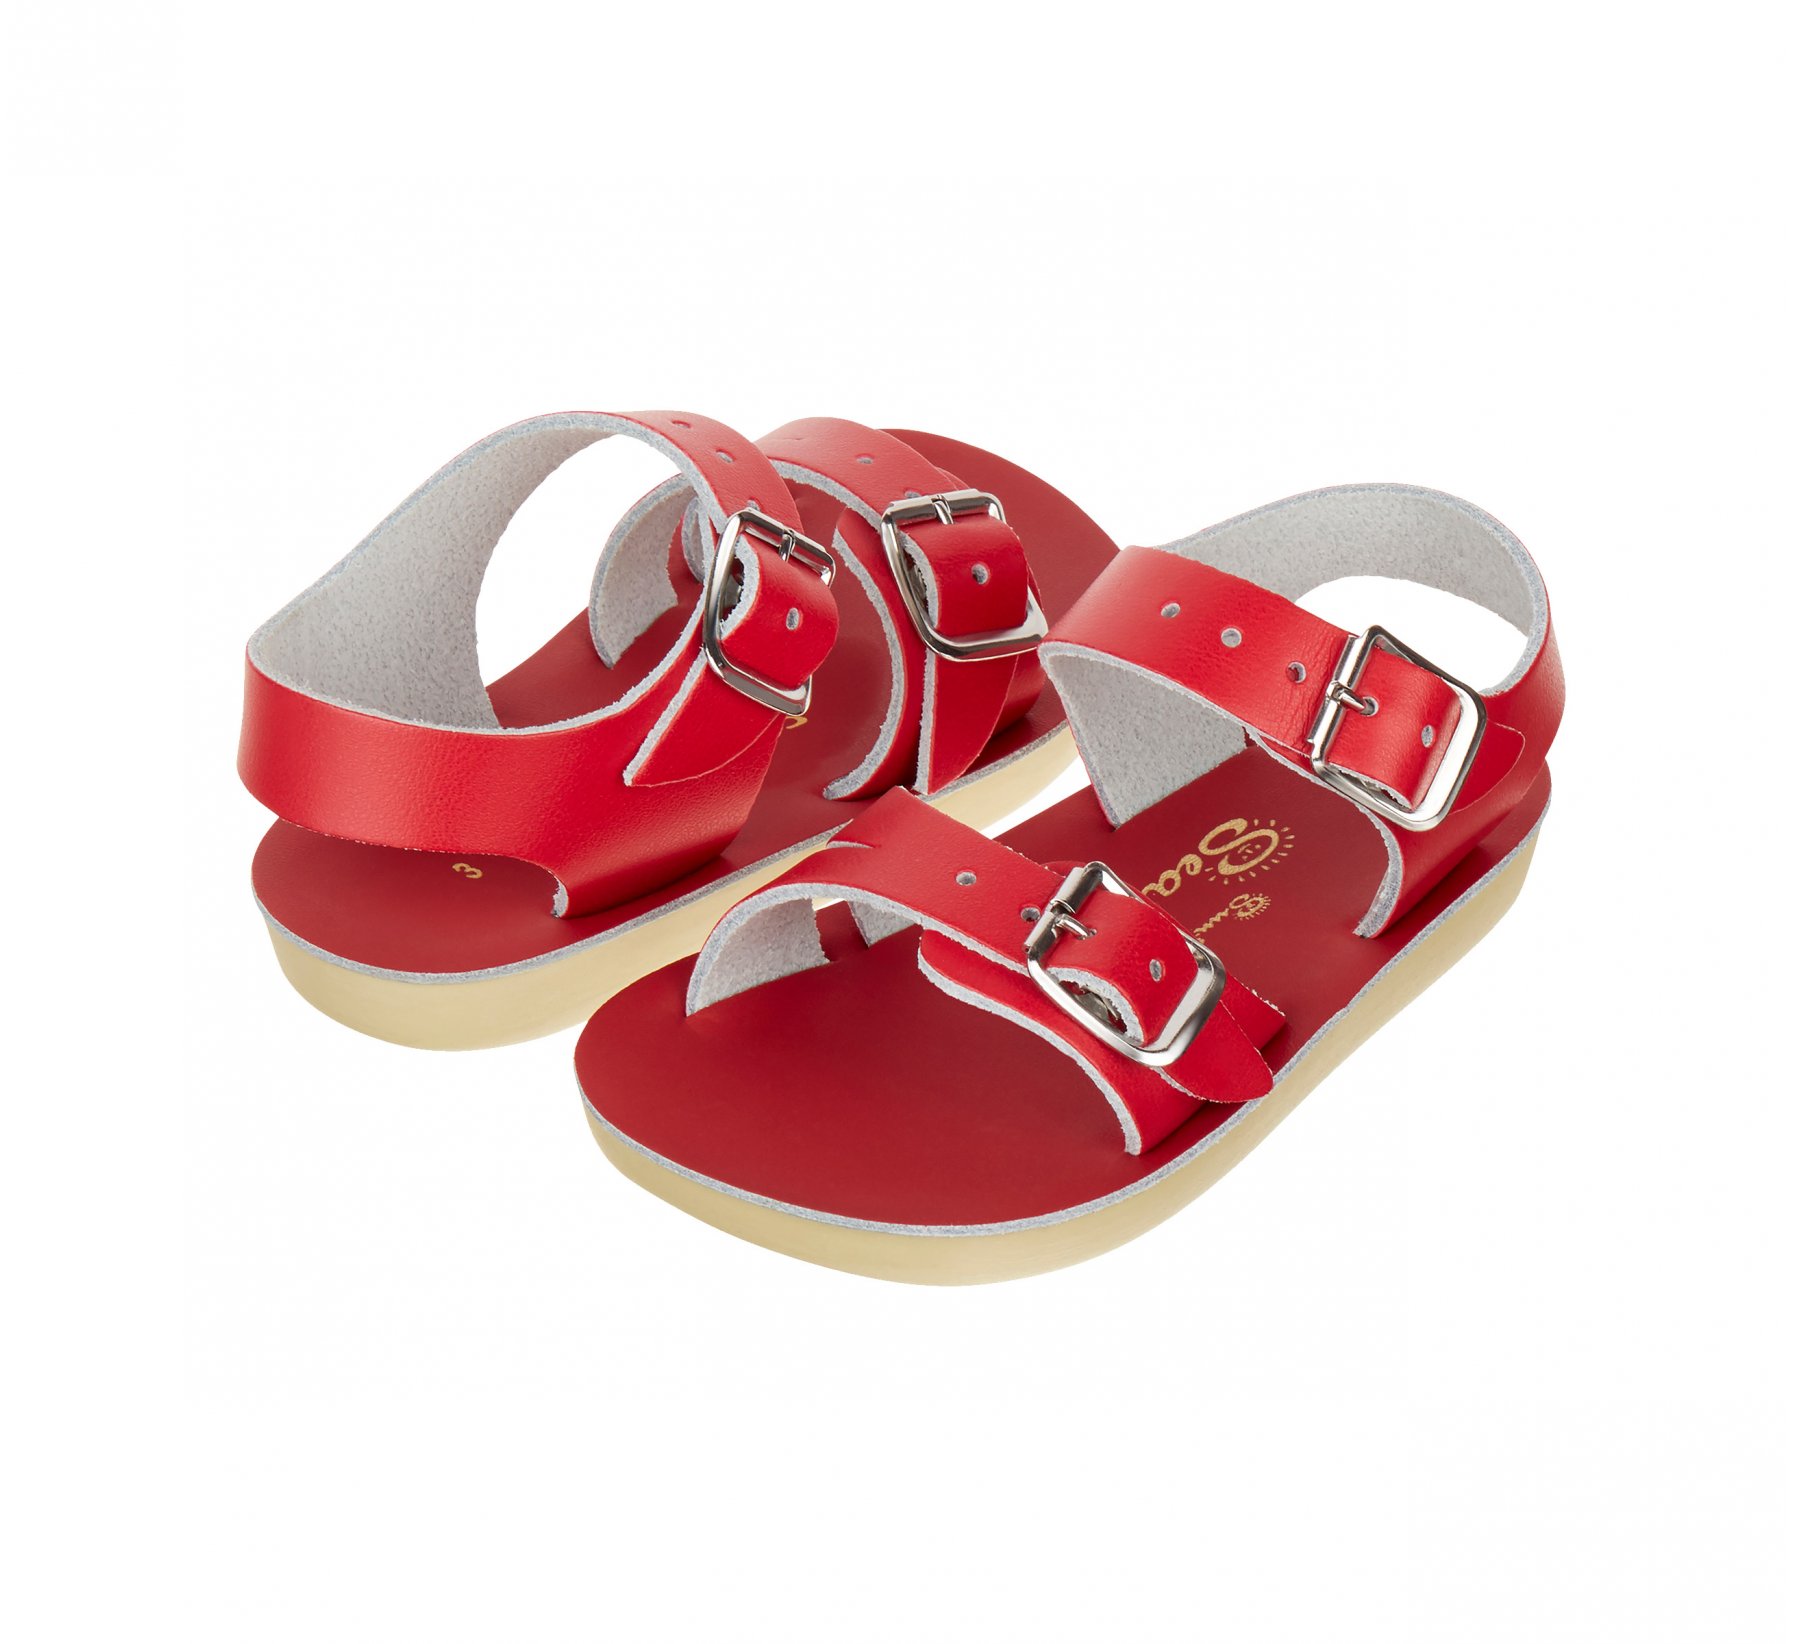 Seawee Red Kids Sandals - Salt Water Sandals